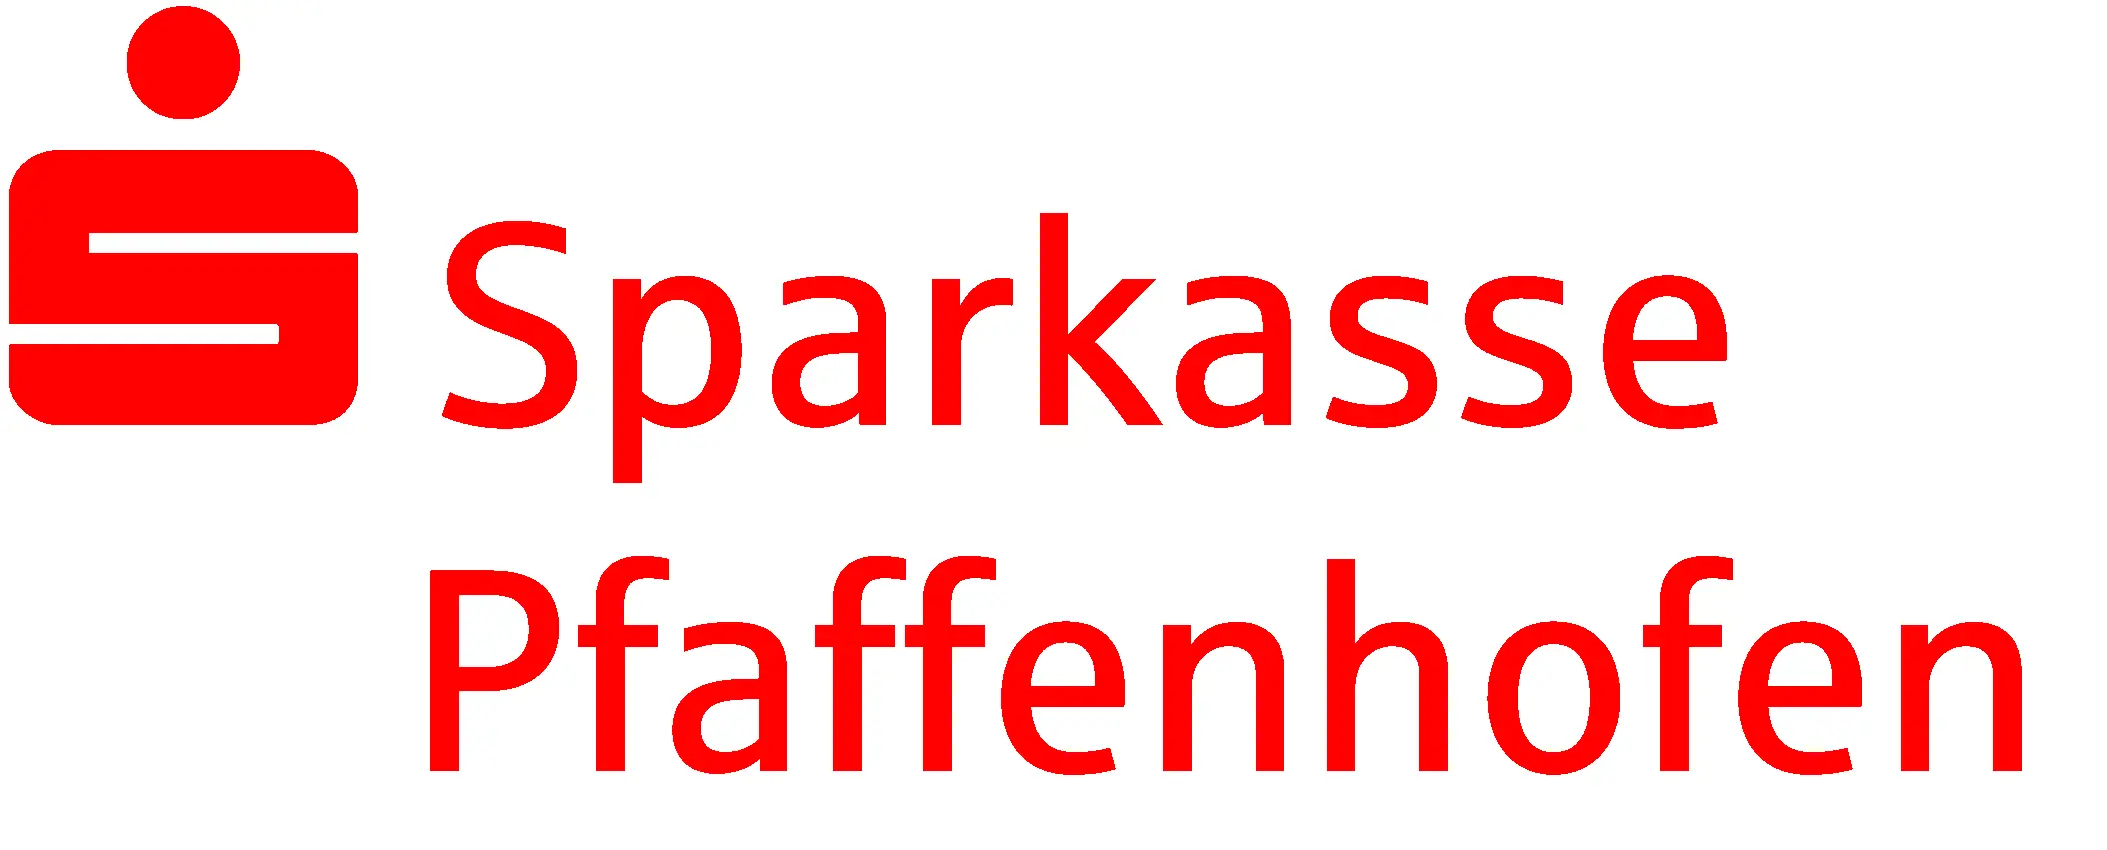 Logo Sparkasse Pfaffenhofen rot ohne hgr